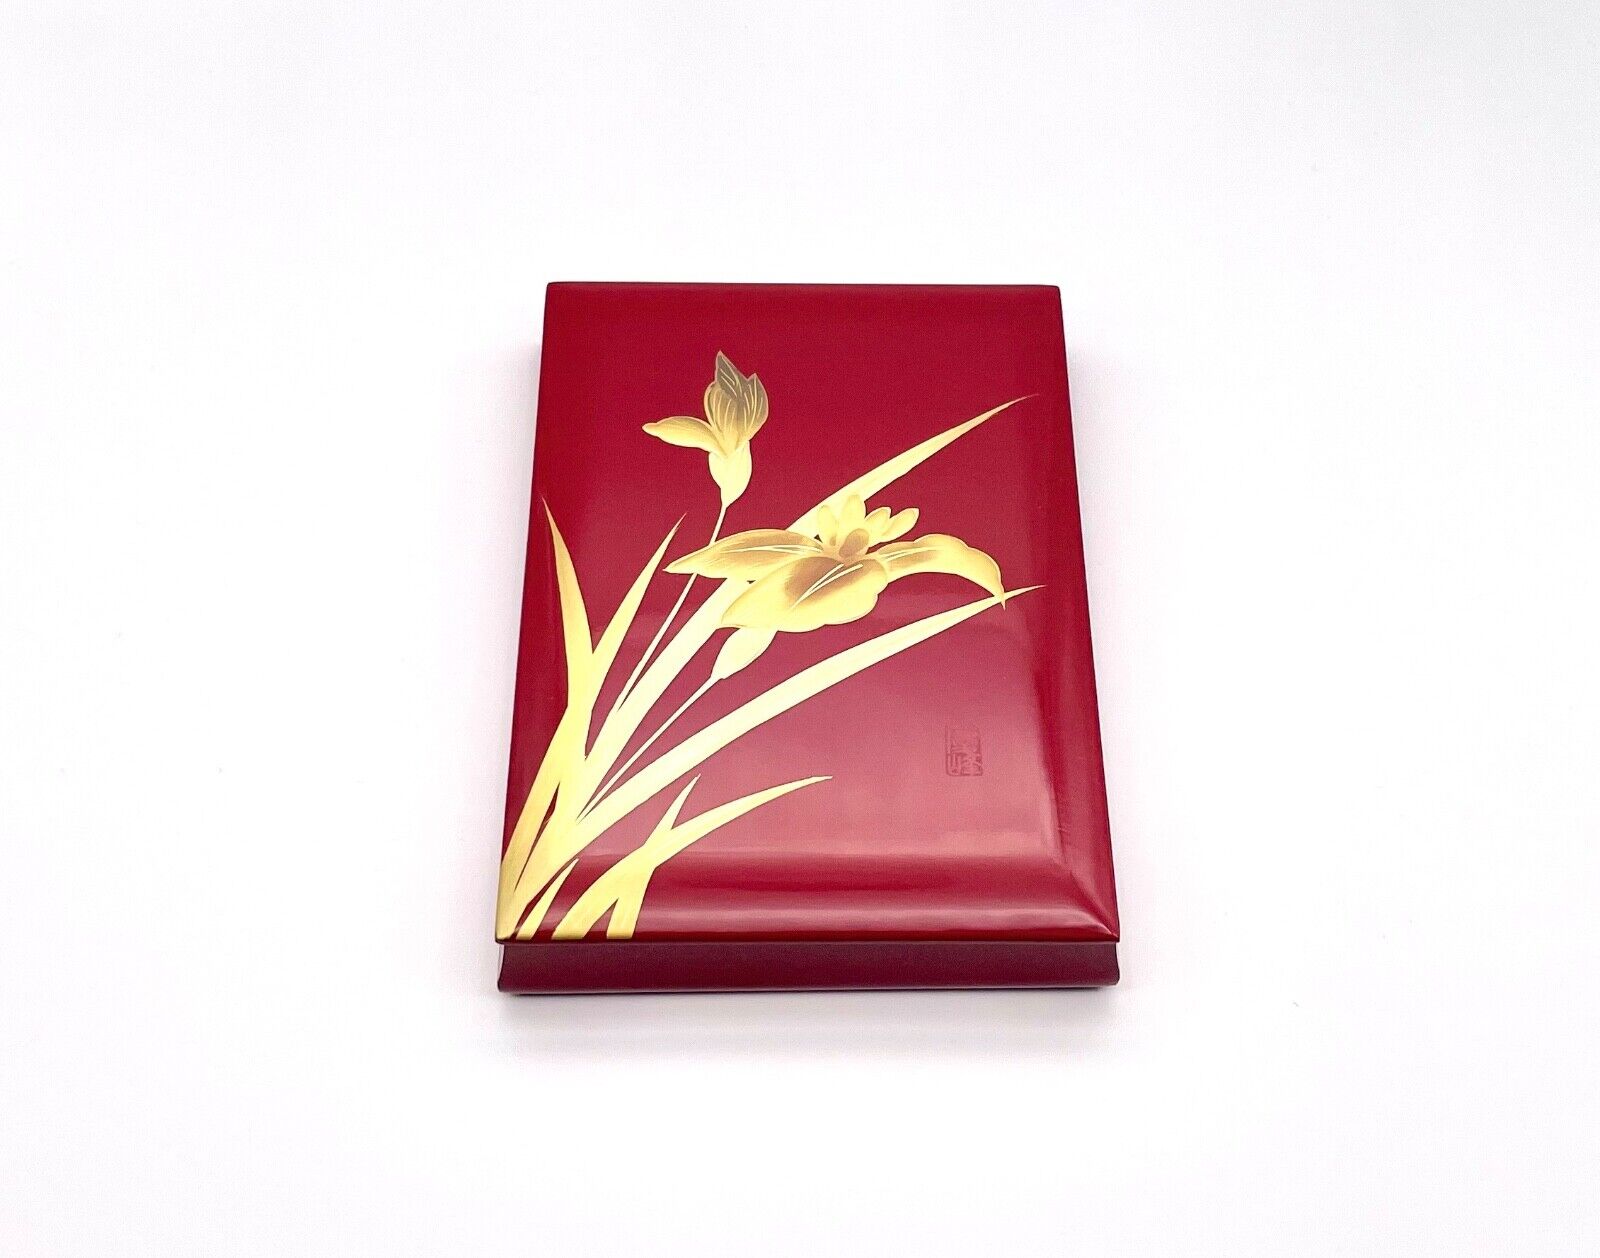 Wajima nuri Stationery Box Gold Lacquer (Japanese Traditional Crafts)